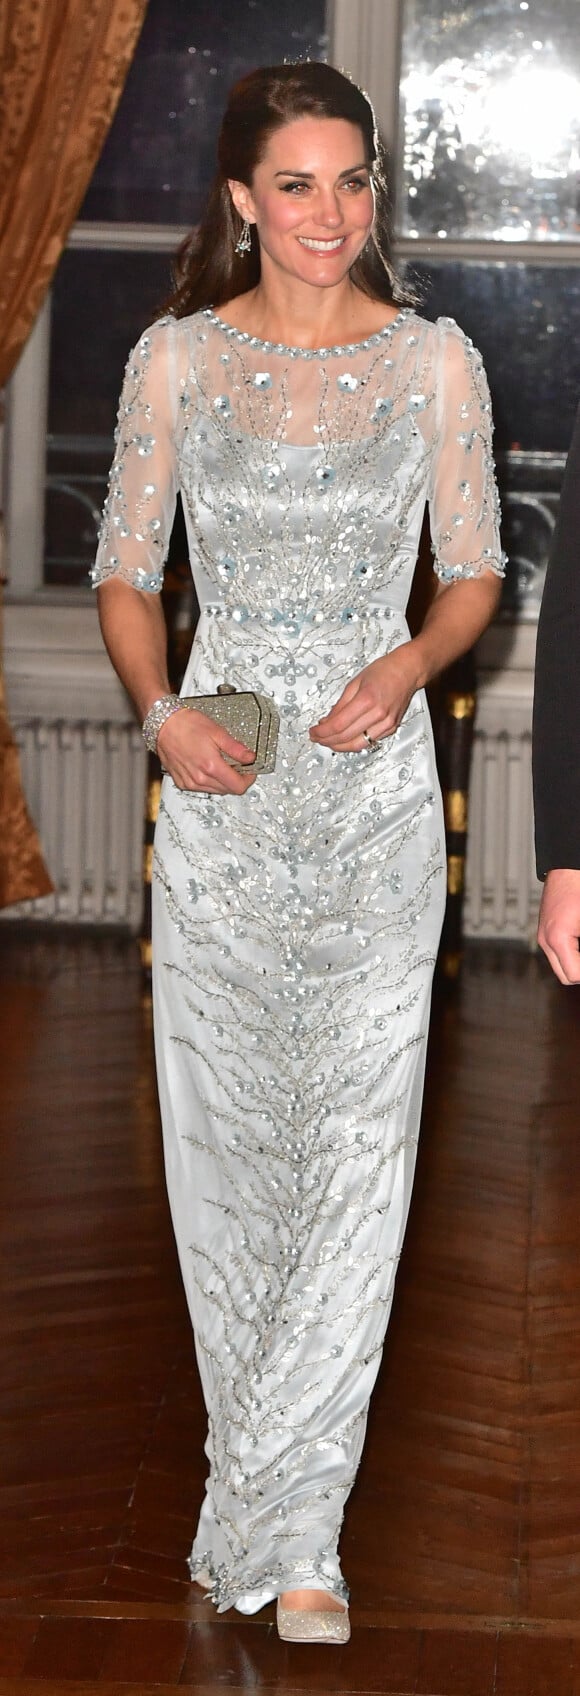 Kate Middleton, duchesse de Cambridge, était somptueuse dans une robe bleu glacé Jenny Packham pour le dîner donné à la résidence de l'ambassadeur de Grande-Bretagne à Paris le 17 mars 2017 en l'honneur de l'amitié franco-britannique (la campagne "Les Voisins" était d'ailleurs lancée à cette occasion), dans le cadre de sa visite officielle de deux jours avec le prince William.